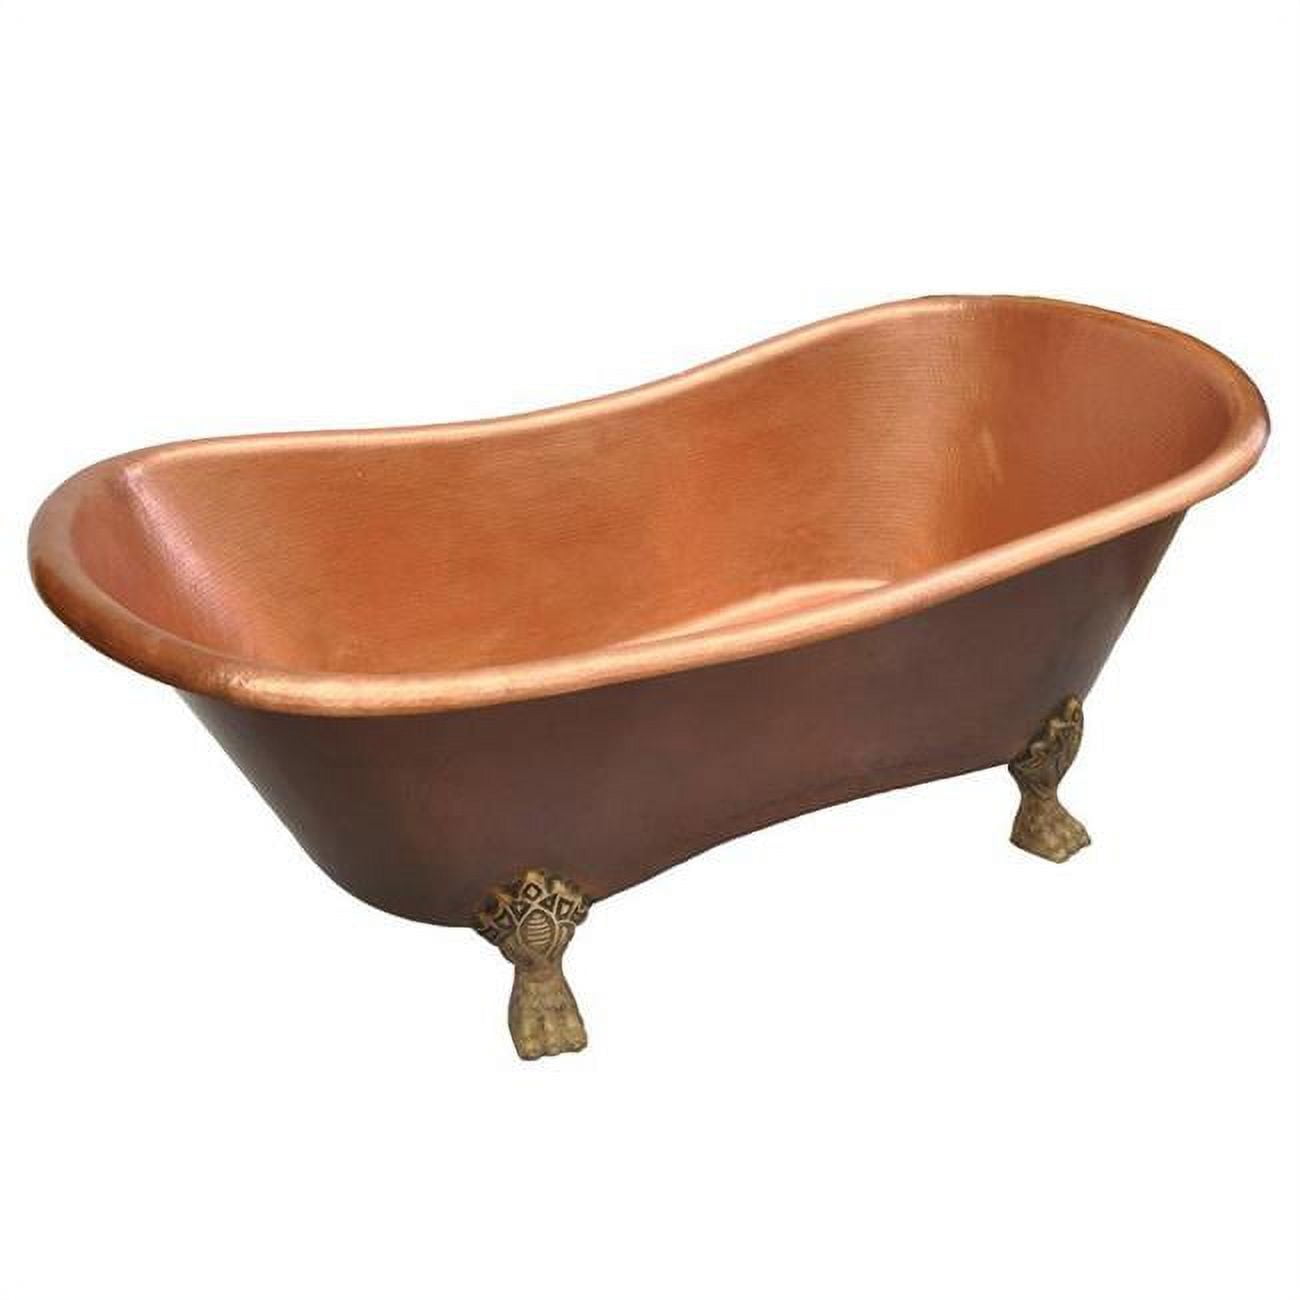 Cbt-at-66-ma Copper Bath Tub Antique Design, Matte - Medium - 32 X 32 X 66 In.